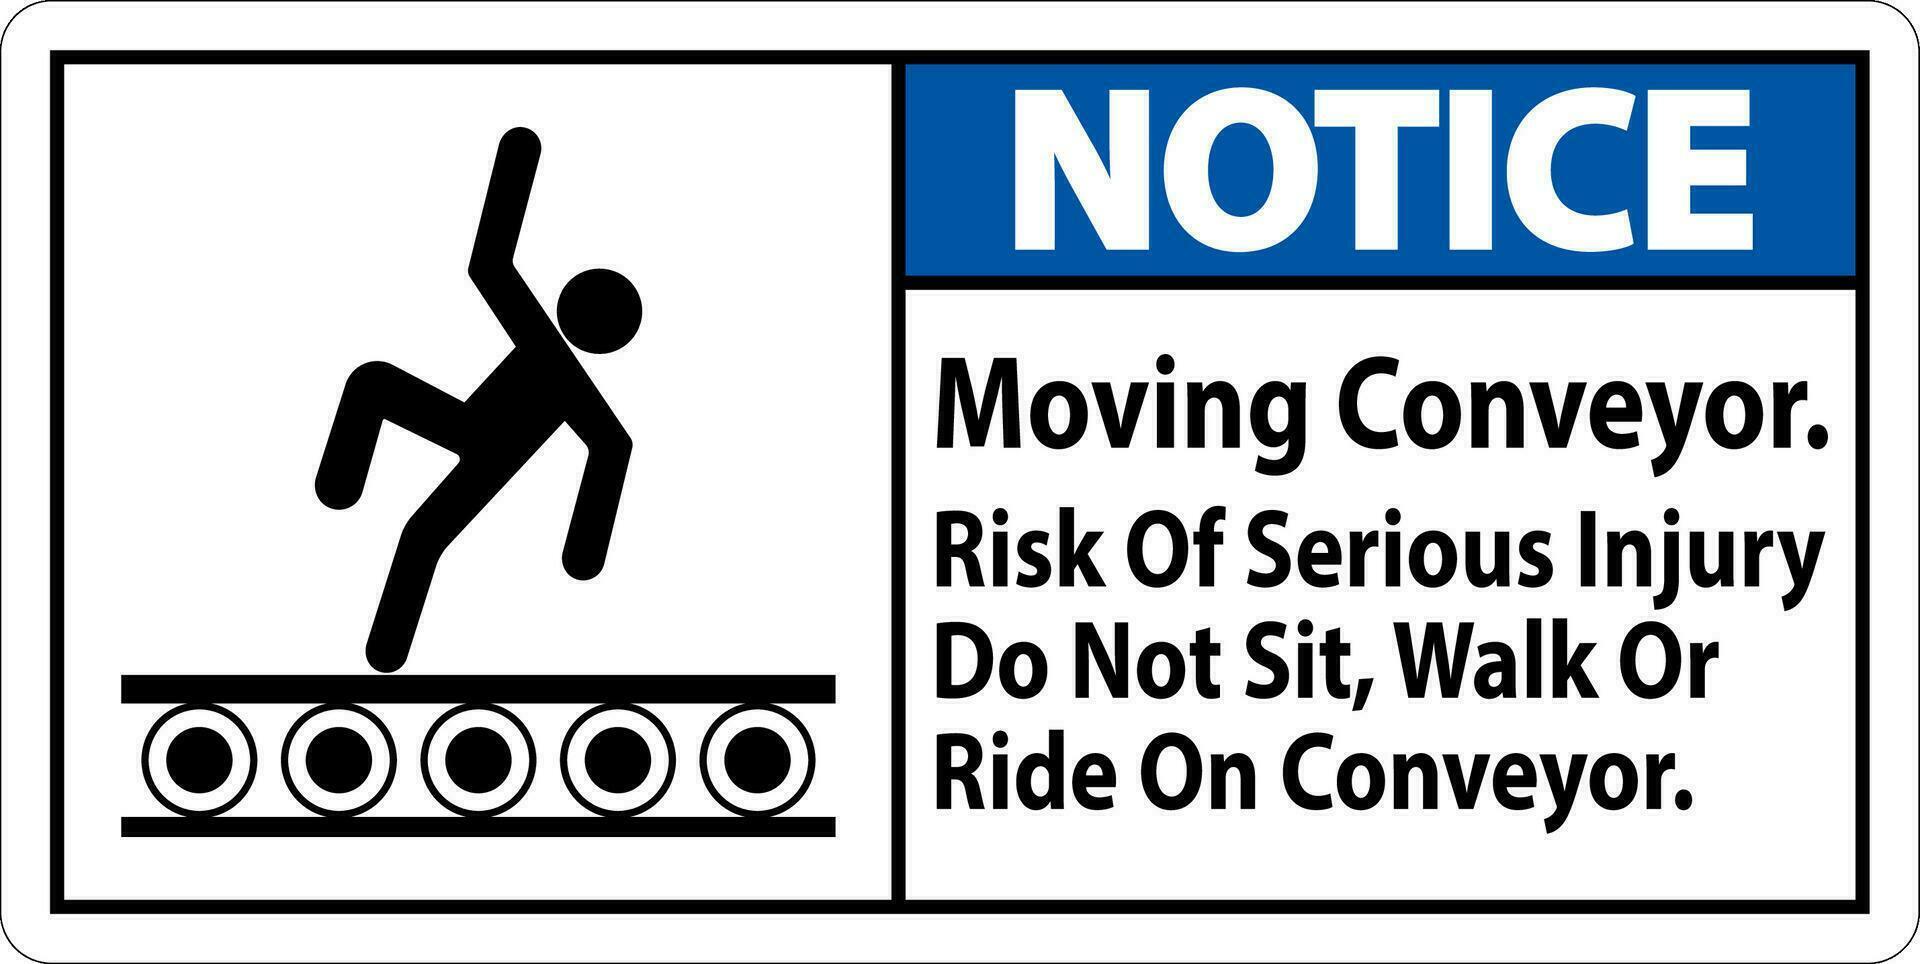 Avviso cartello in movimento trasportatore, rischio di grave infortunio fare non sedersi camminare o cavalcata su trasportatore vettore